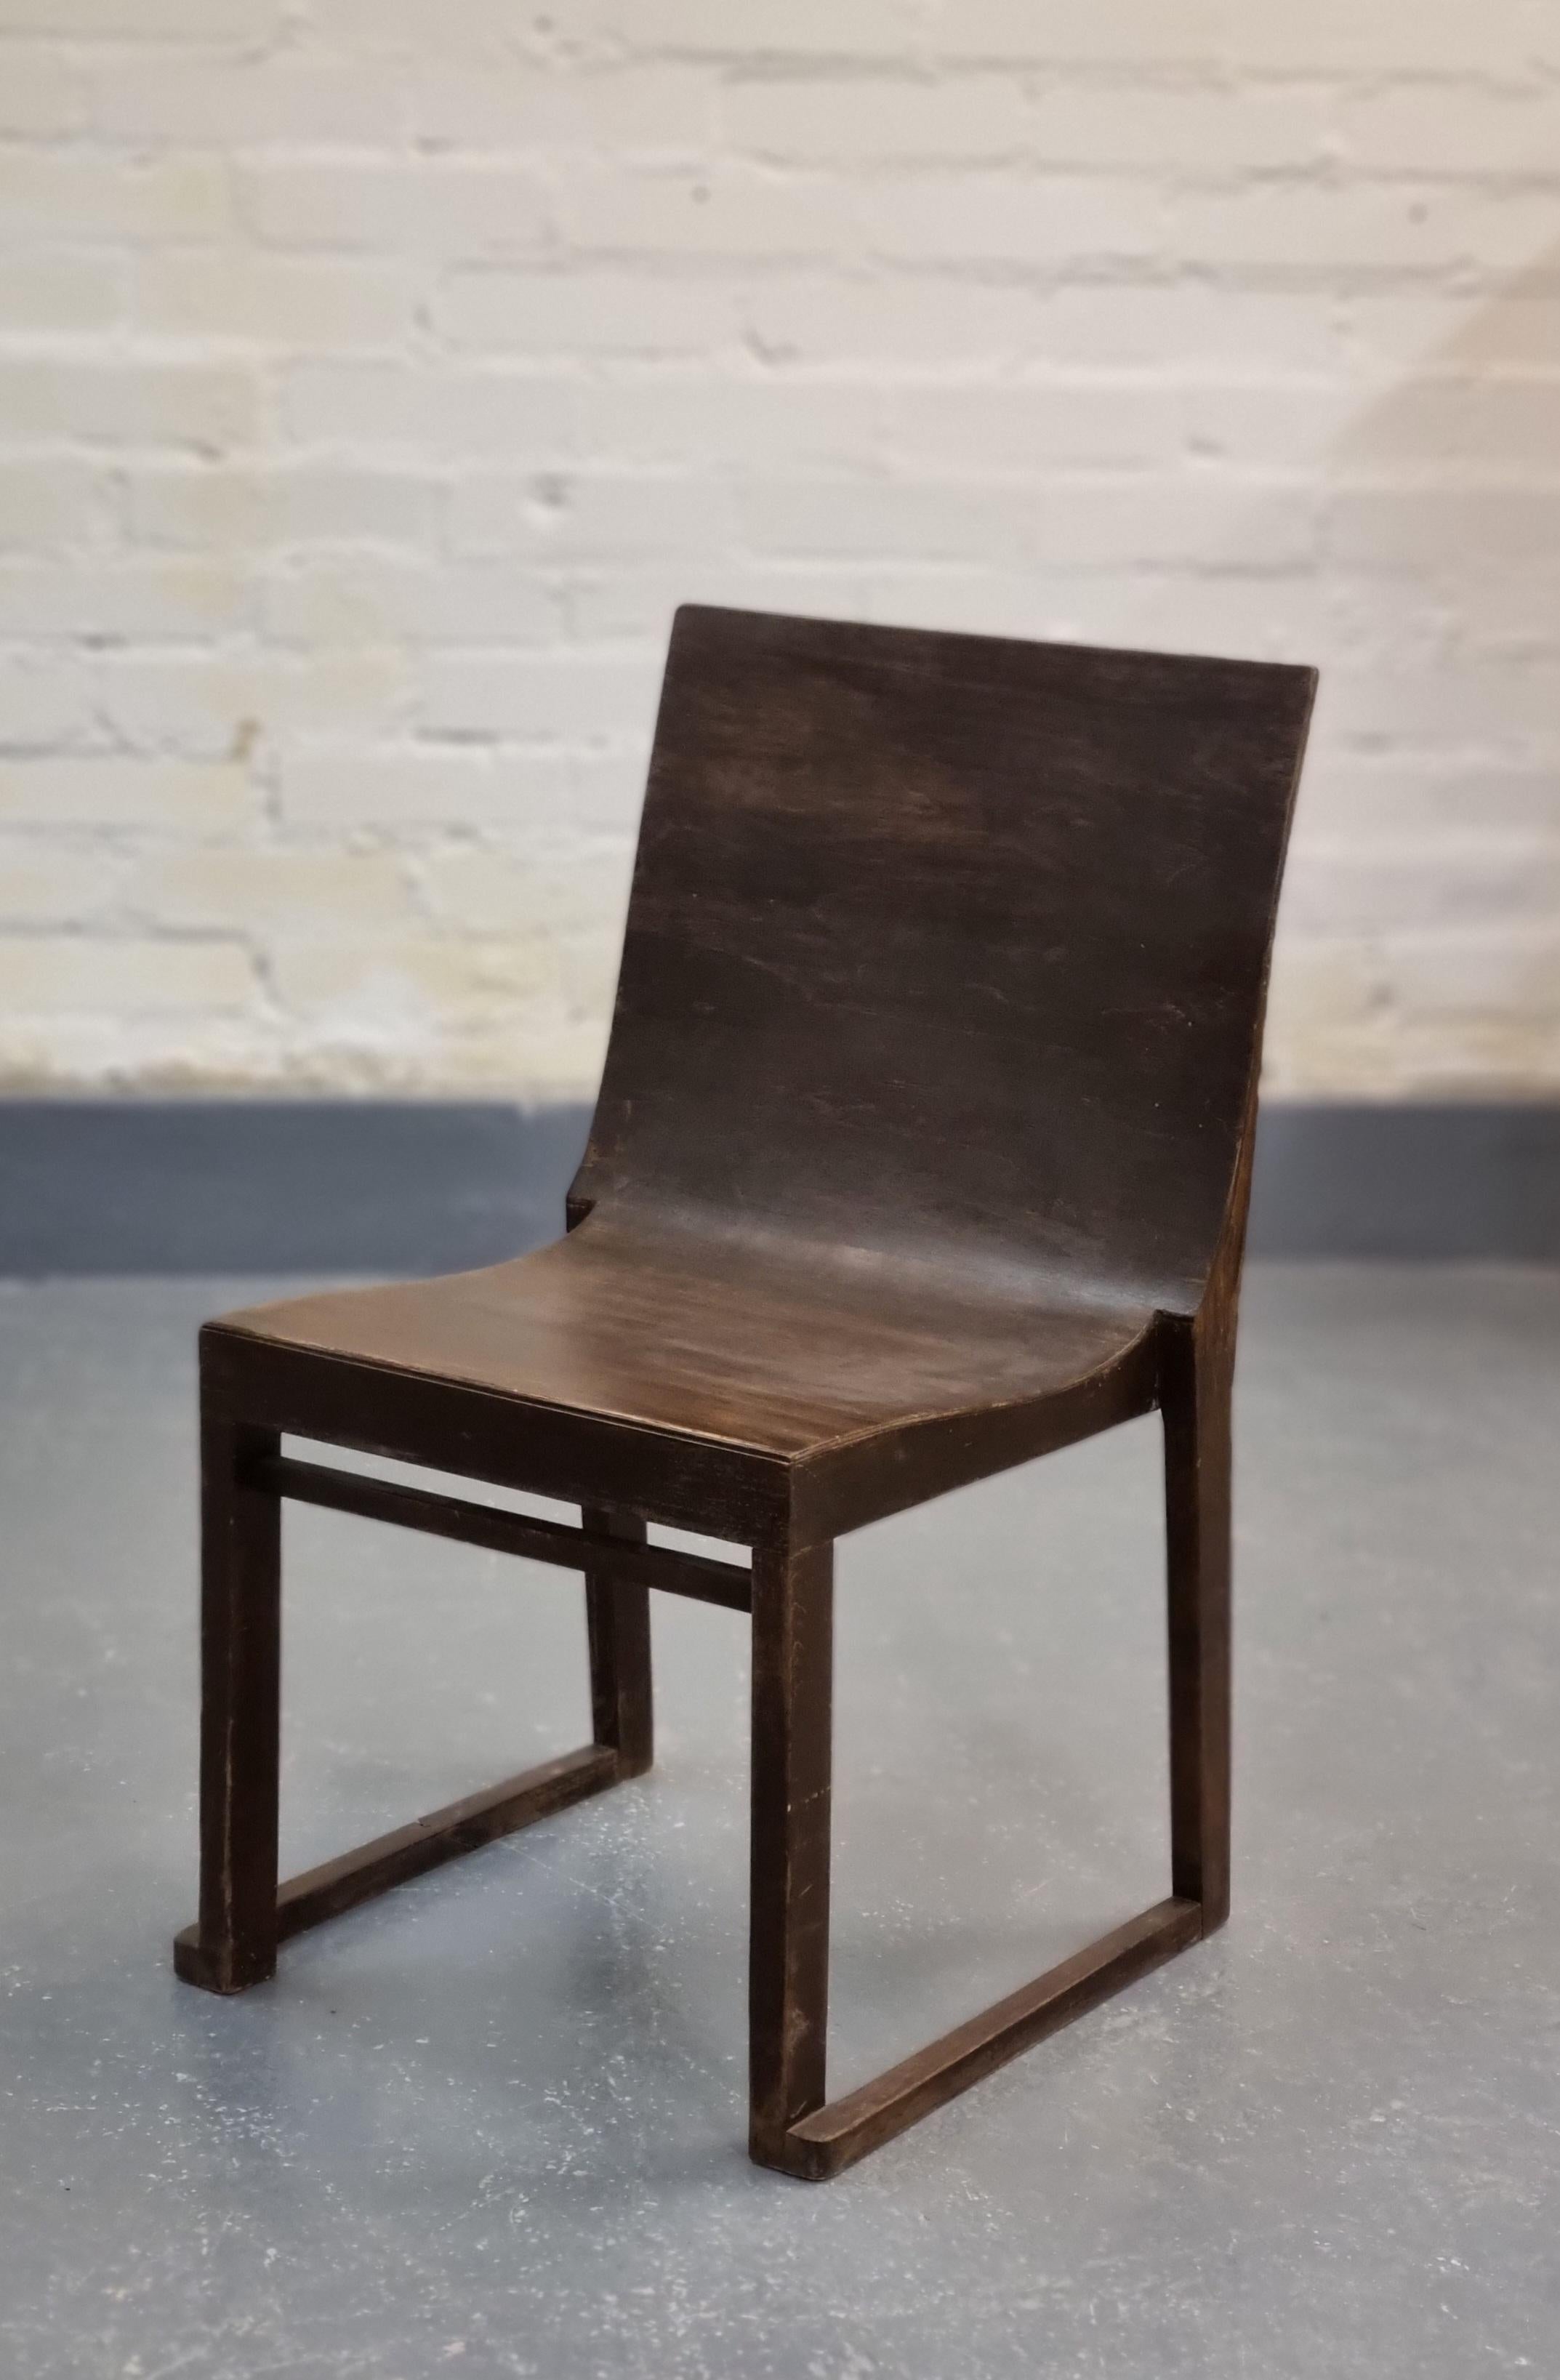 Cette chaise fonctionnaliste minimaliste, connue sous le nom de 